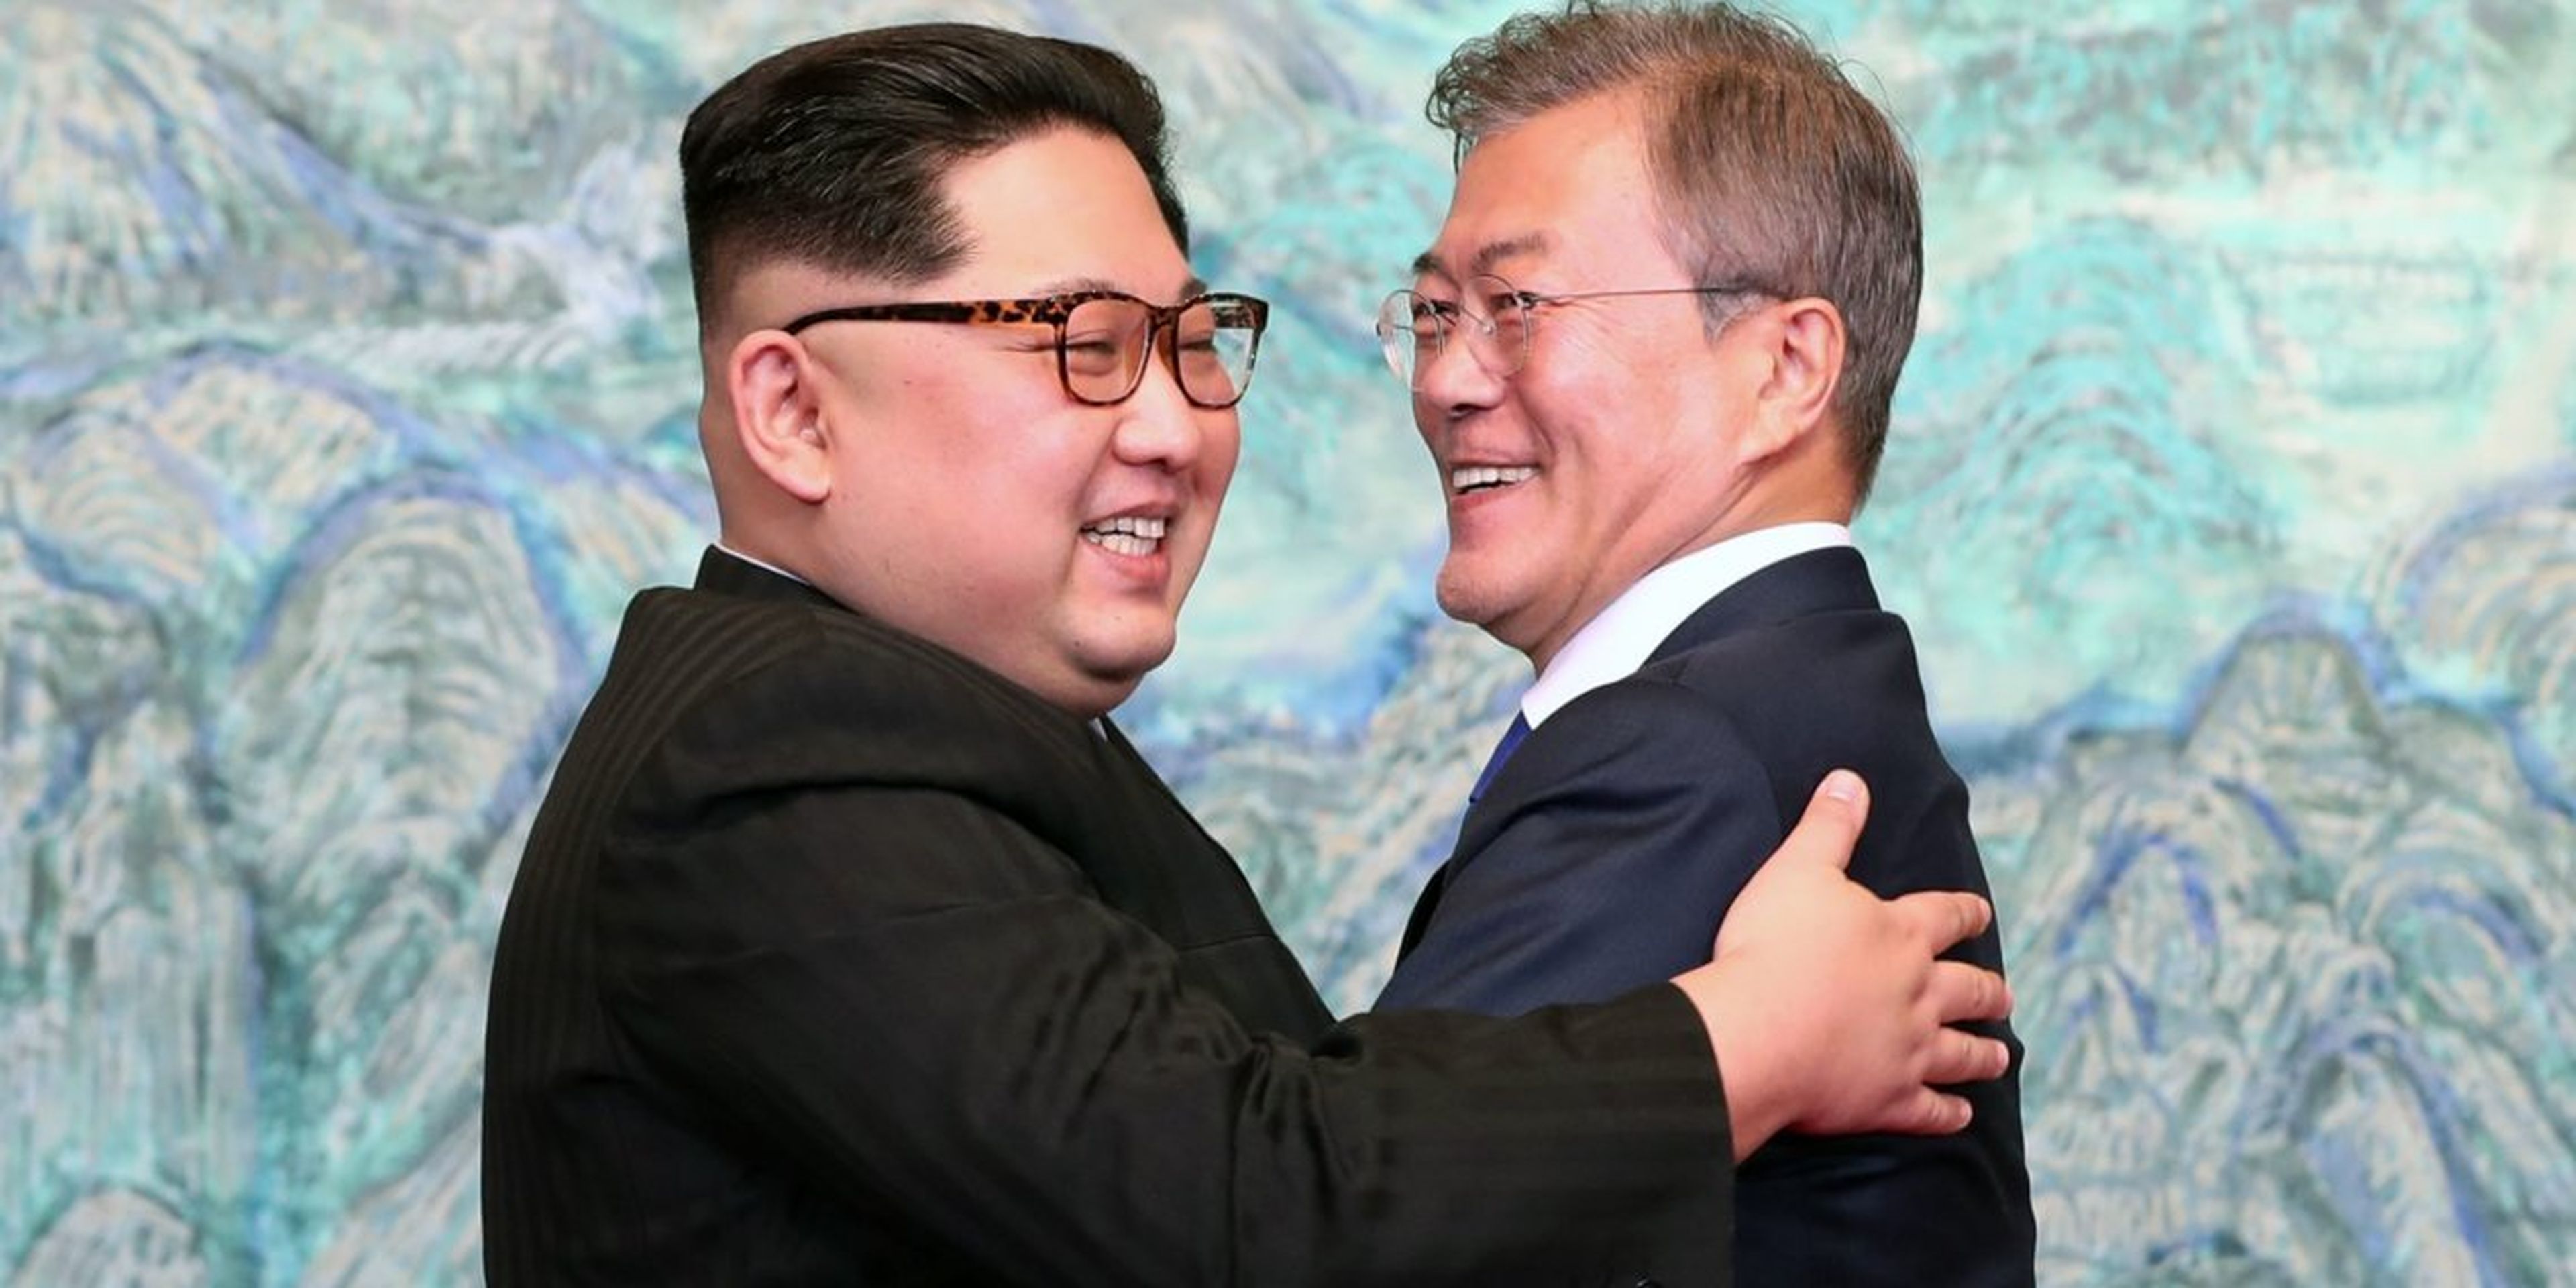 El líder norcoreano Kim Jong Un y el presidente surcoreano Moon Jae-in se abrazan después de firmar la Declaración de Panmunjom por la paz, durante la Cumbre Intercoreana el 27 de abril de 2018 en Panmunjom, Corea del Sur.